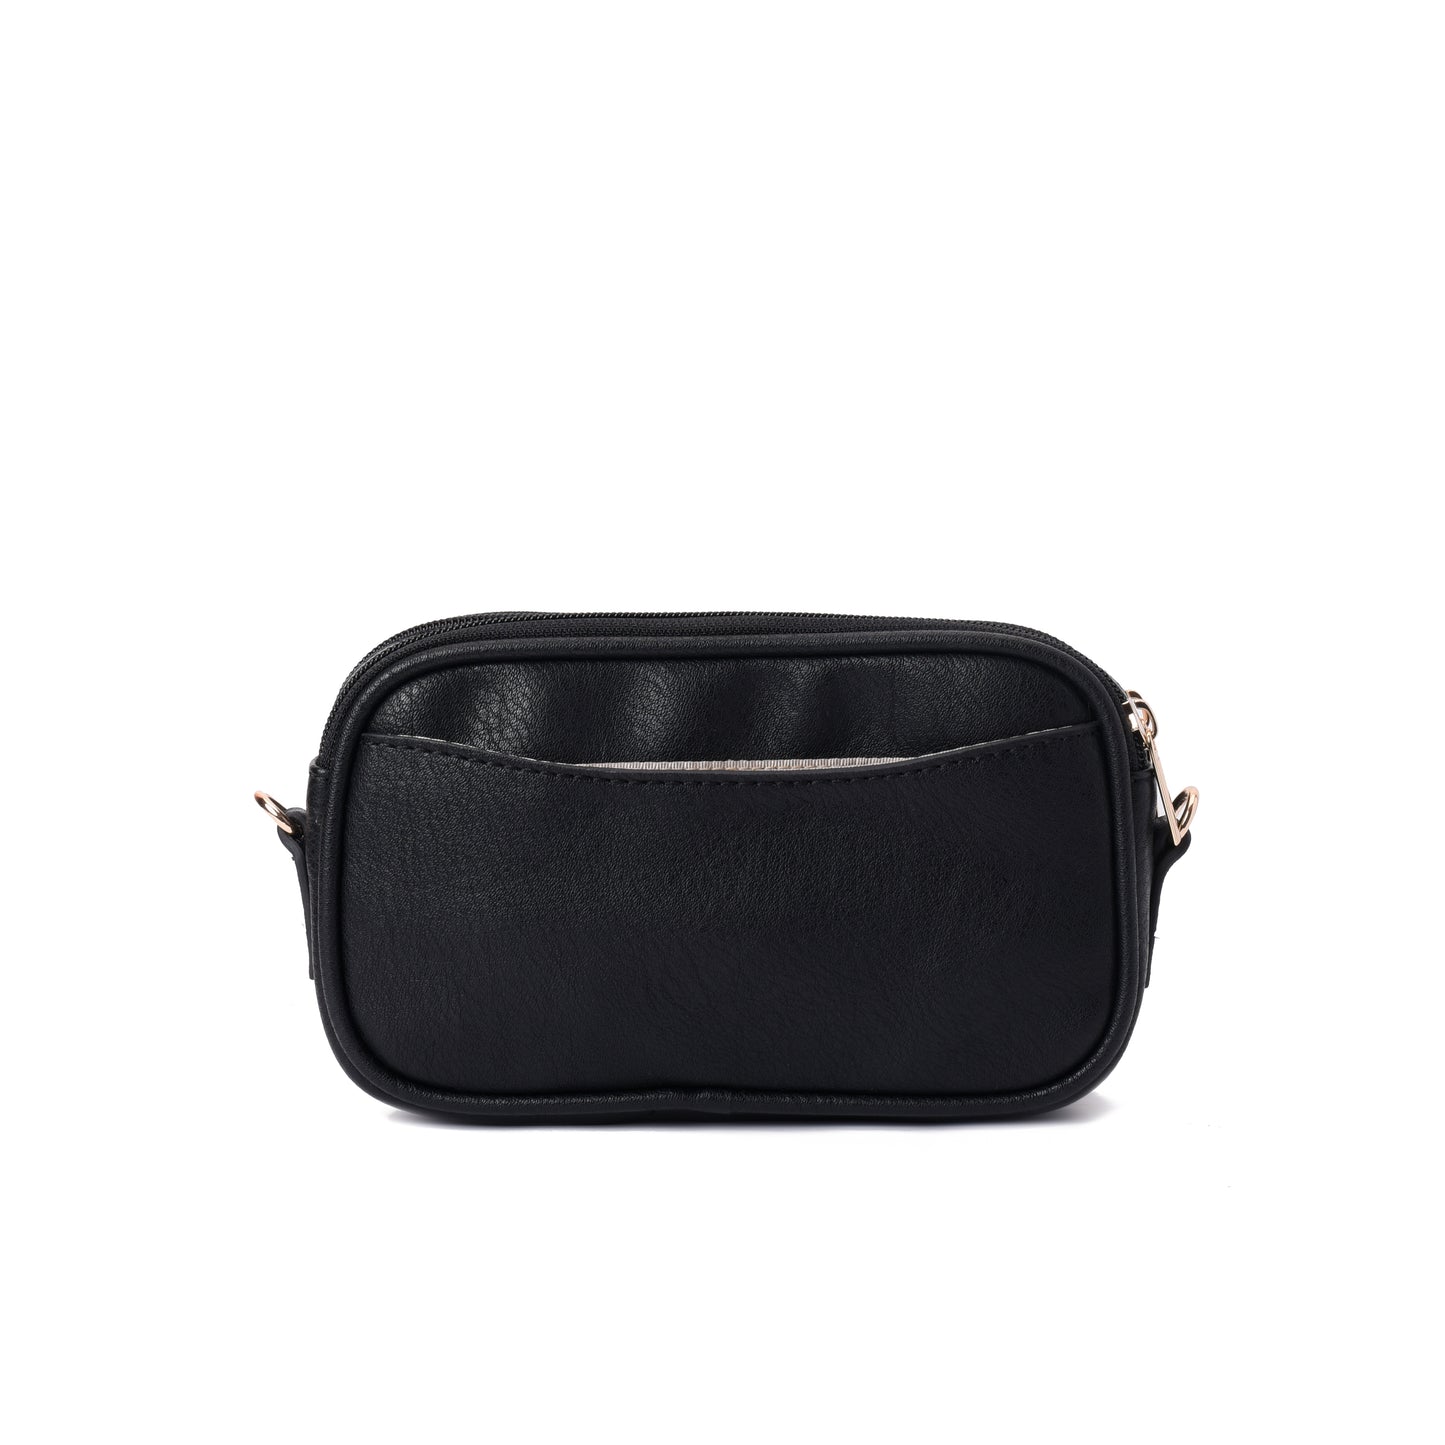 Burst Black Handbag - Code 943